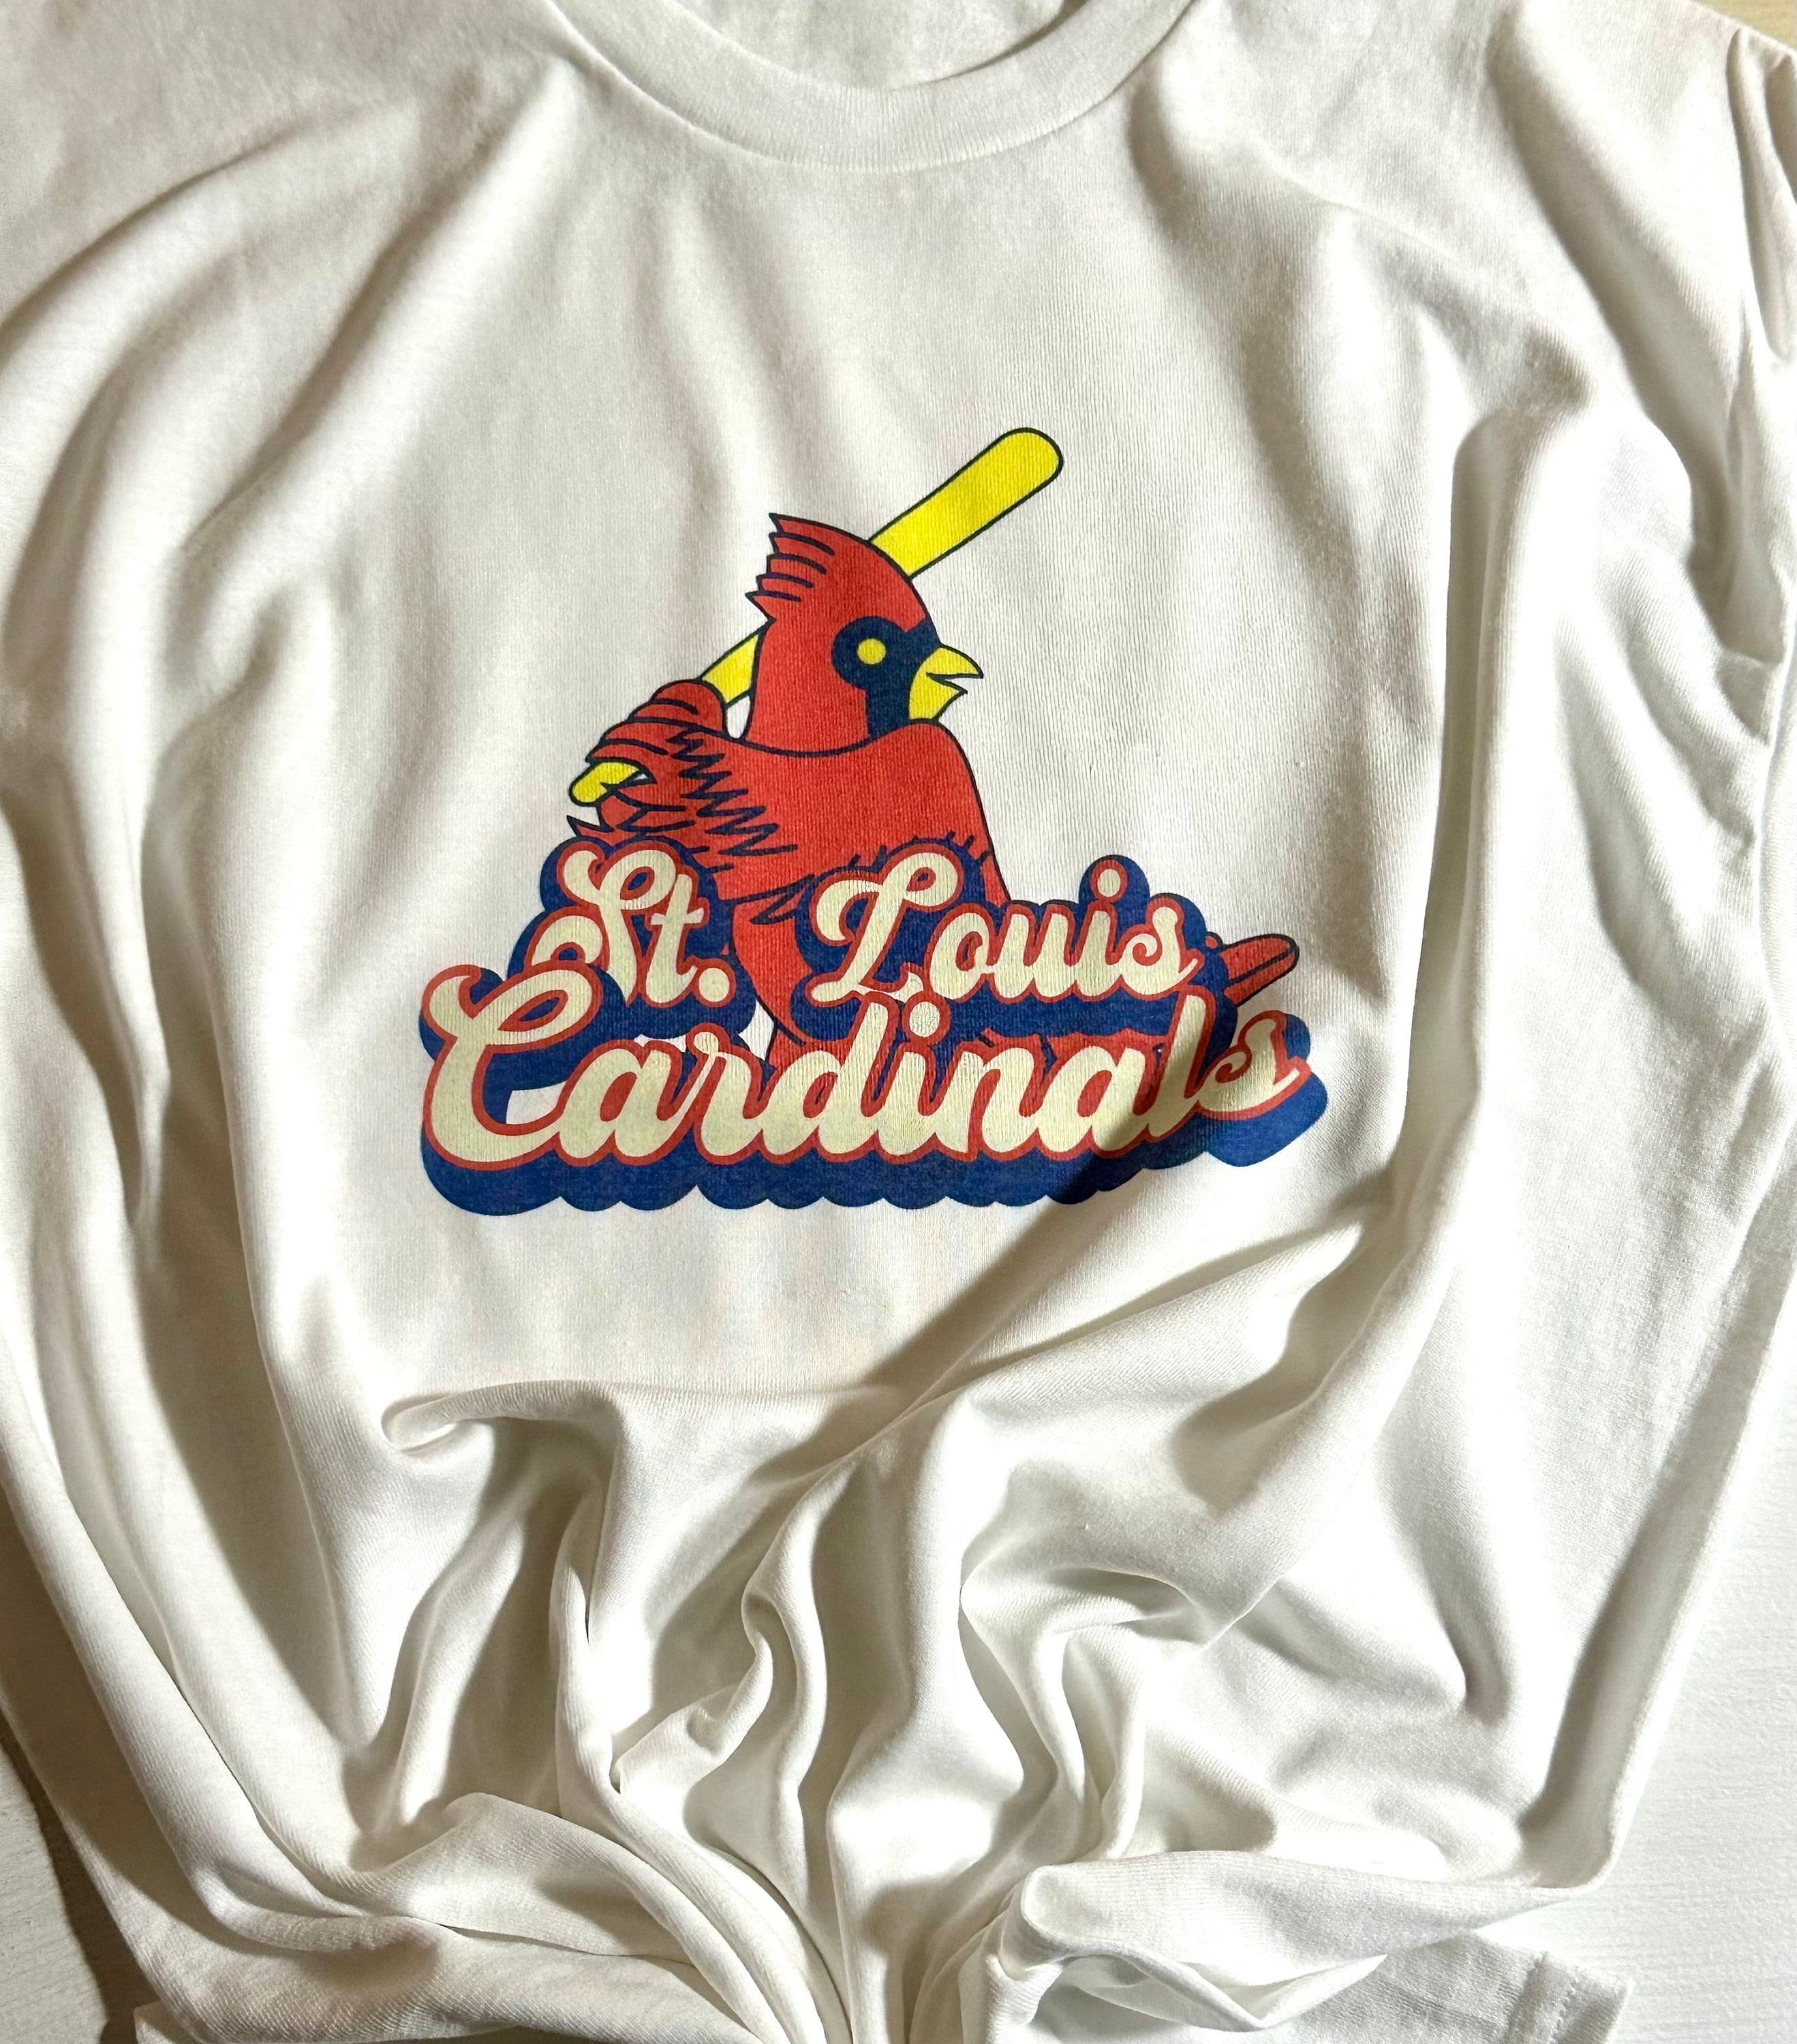 St. Louis Cardinals T-Shirt 